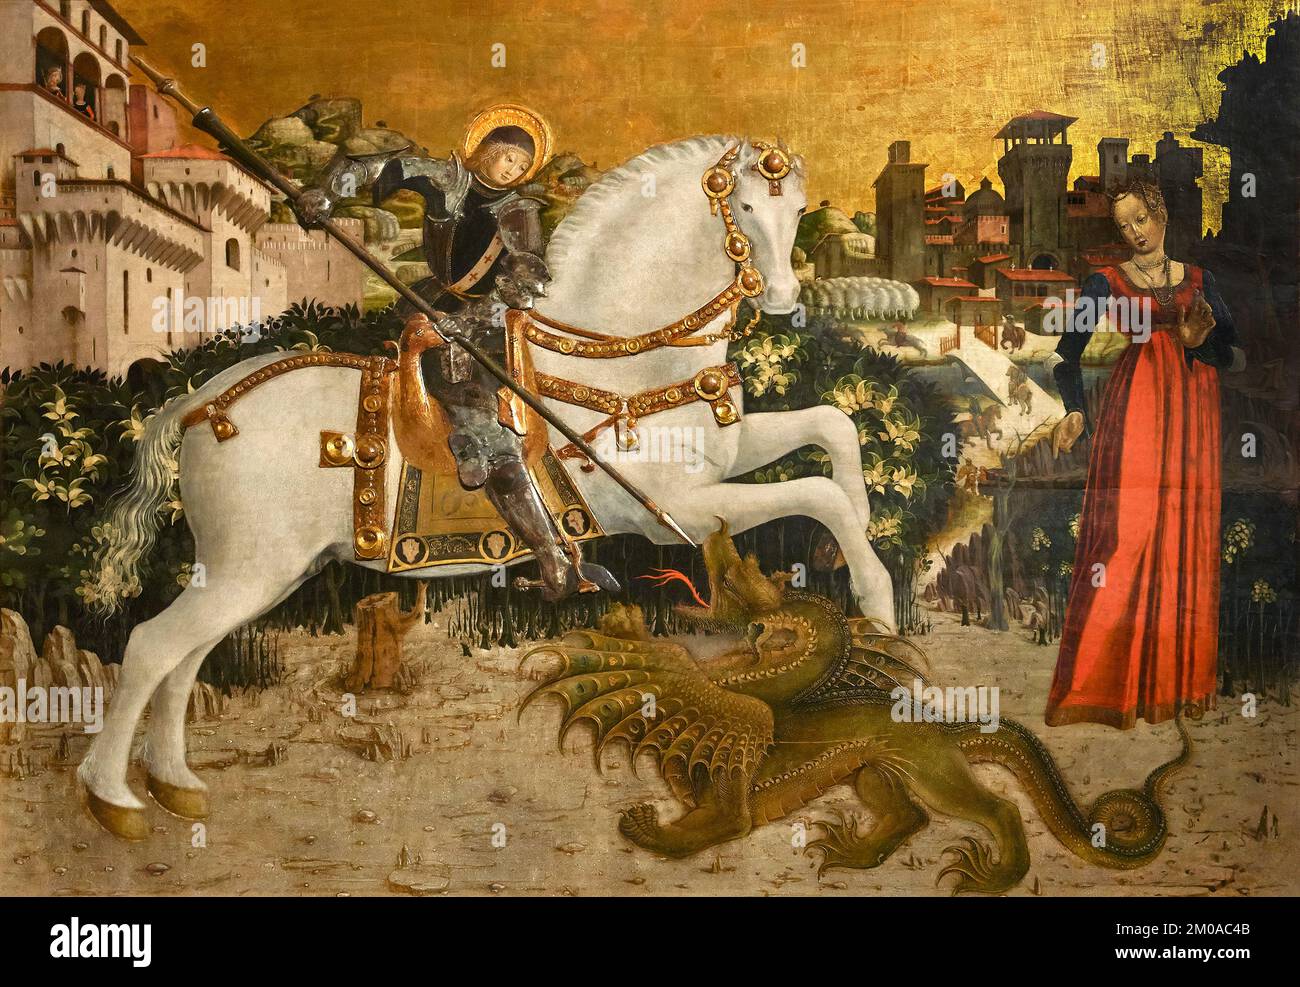 San Giorgio e il drago - tempera su tavola, oro a guazzo e lamina d'argento - pittore bresciano nel 1460/1465 - Brescia, Pinacoteca Tosio Martinengo Foto Stock